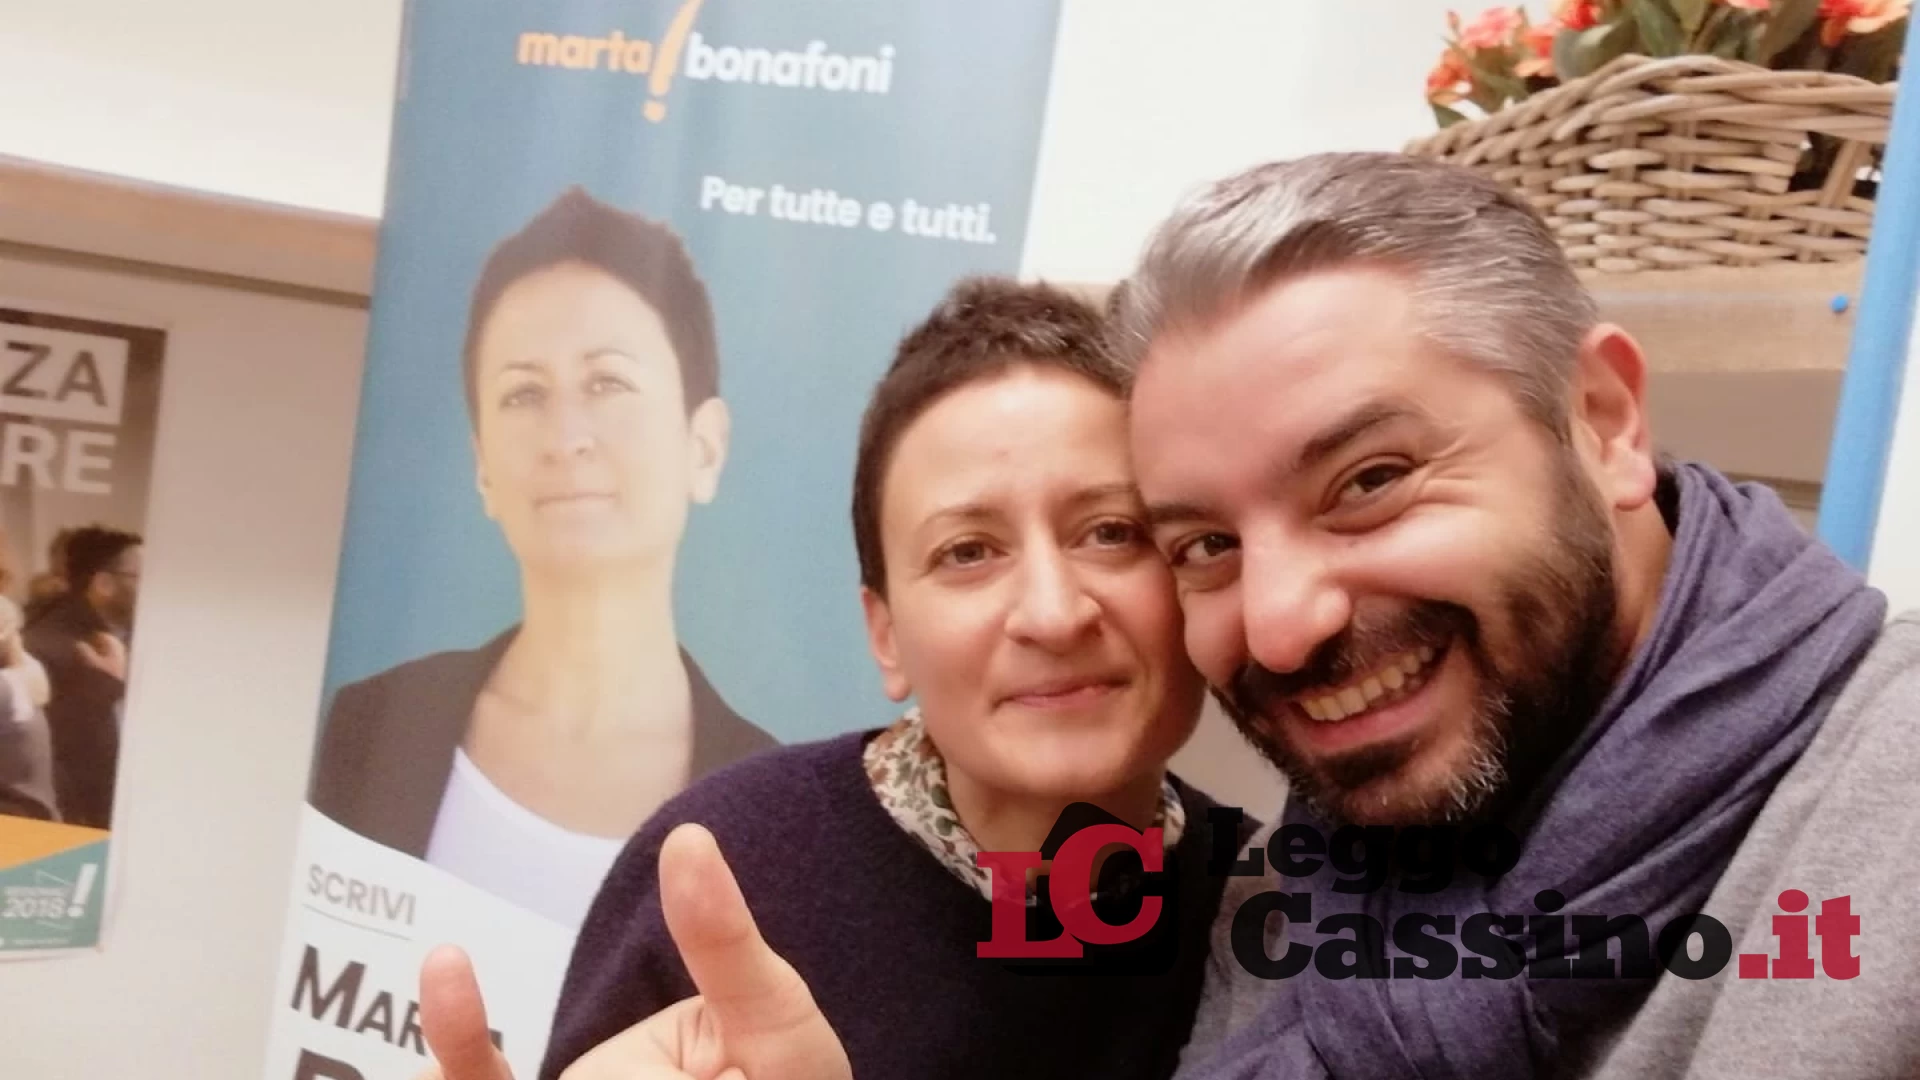 Il "tour dei desideri" di Marta Bonafoni fa tappa a Cassino